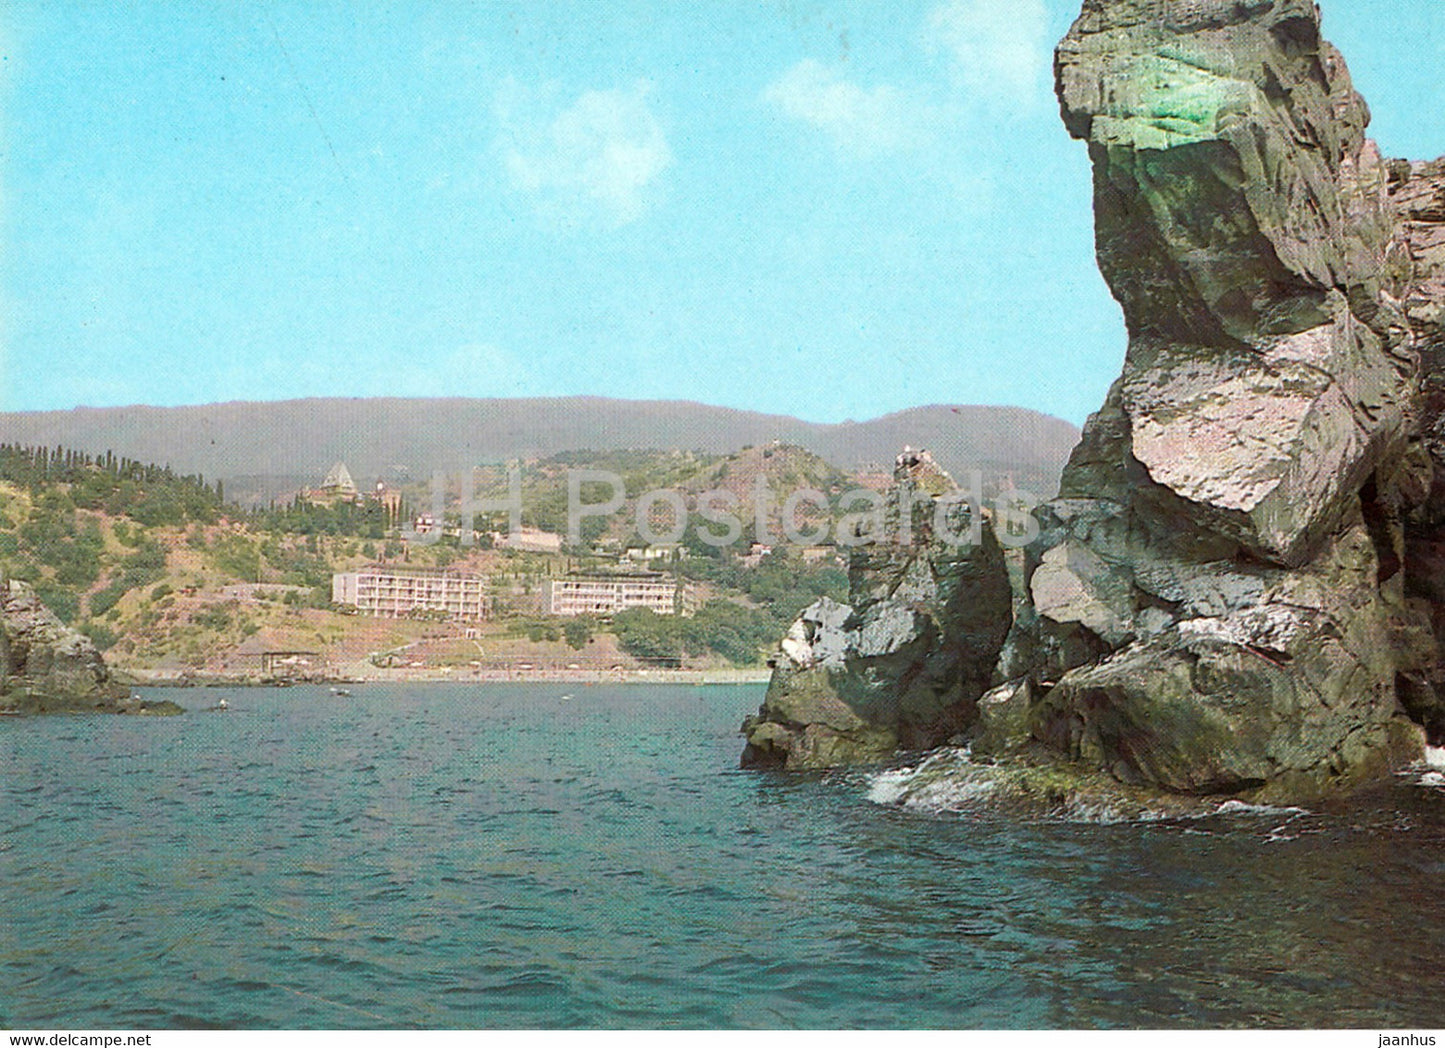 Crimea - Alushta - sanatorium Utyes (Cliff) - postal stationery - 1981 - Ukraine USSR - unused - JH Postcards